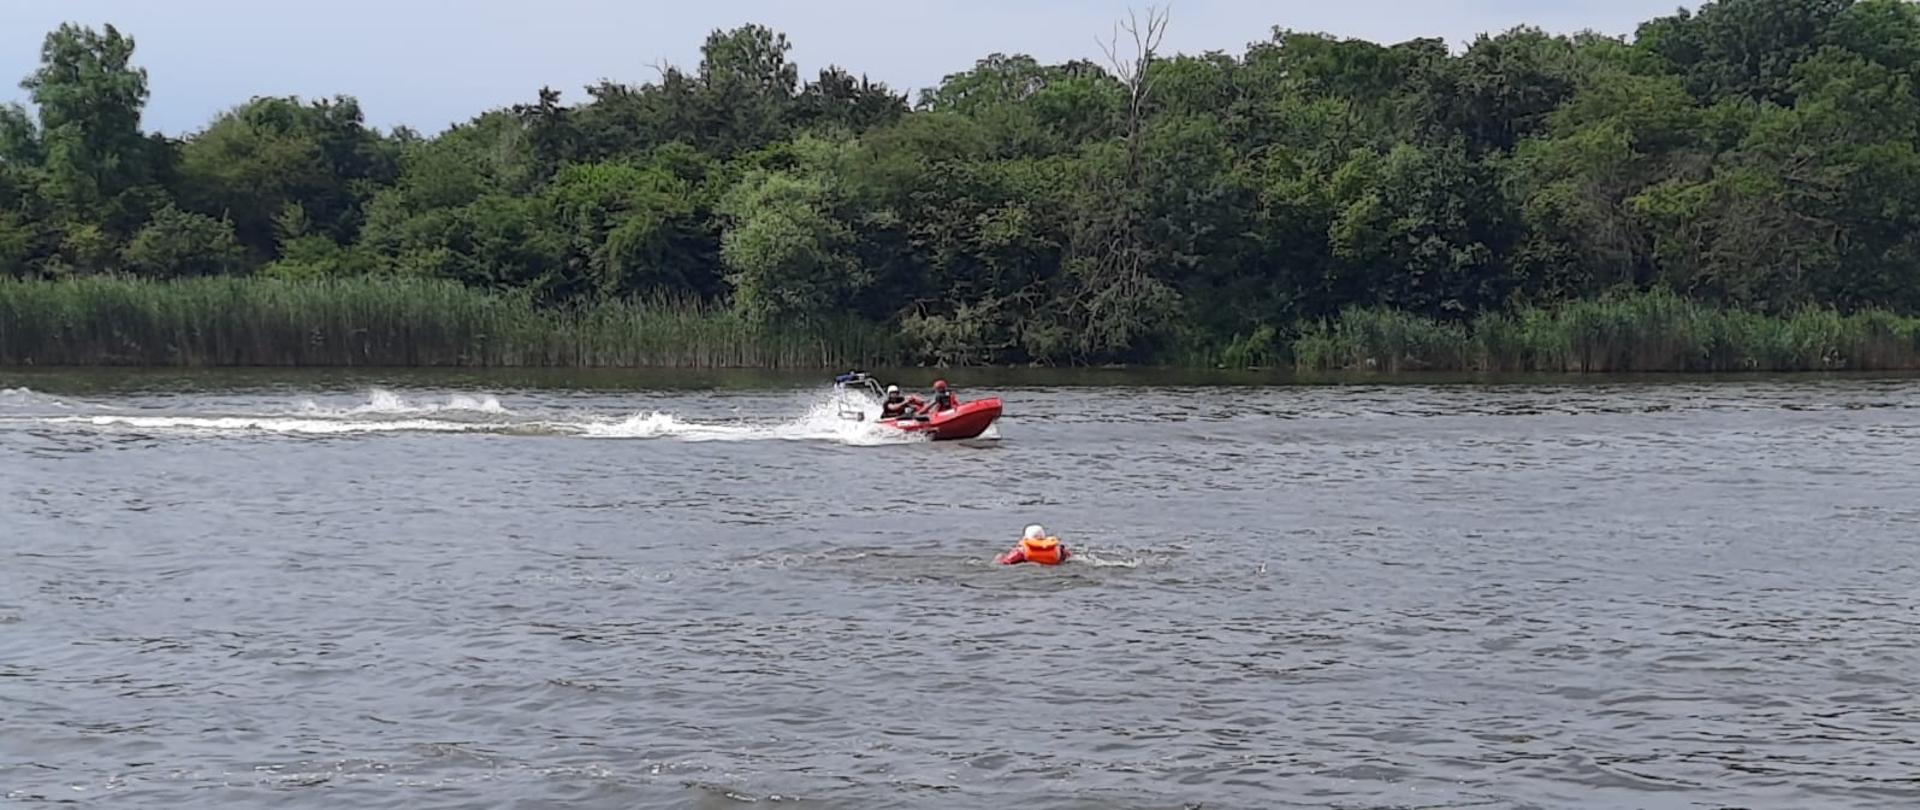 Widać łódź motorową podpływającą do osoby poszkodowanej w wodzie